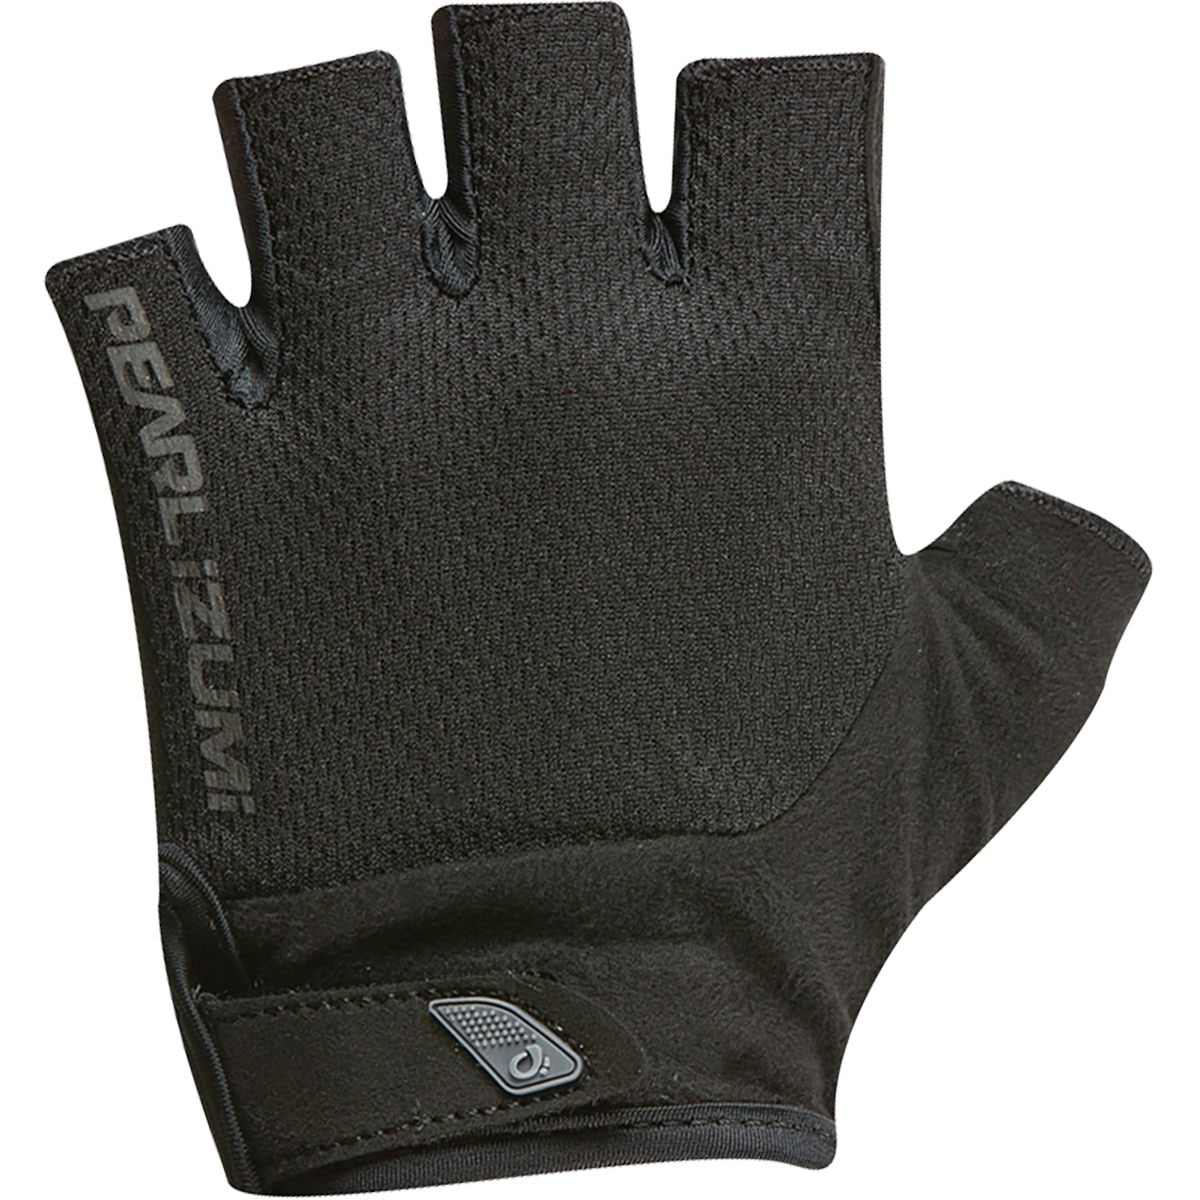 Photos - Winter Gloves & Mittens Pearl Izumi Attack Glove - Women's 